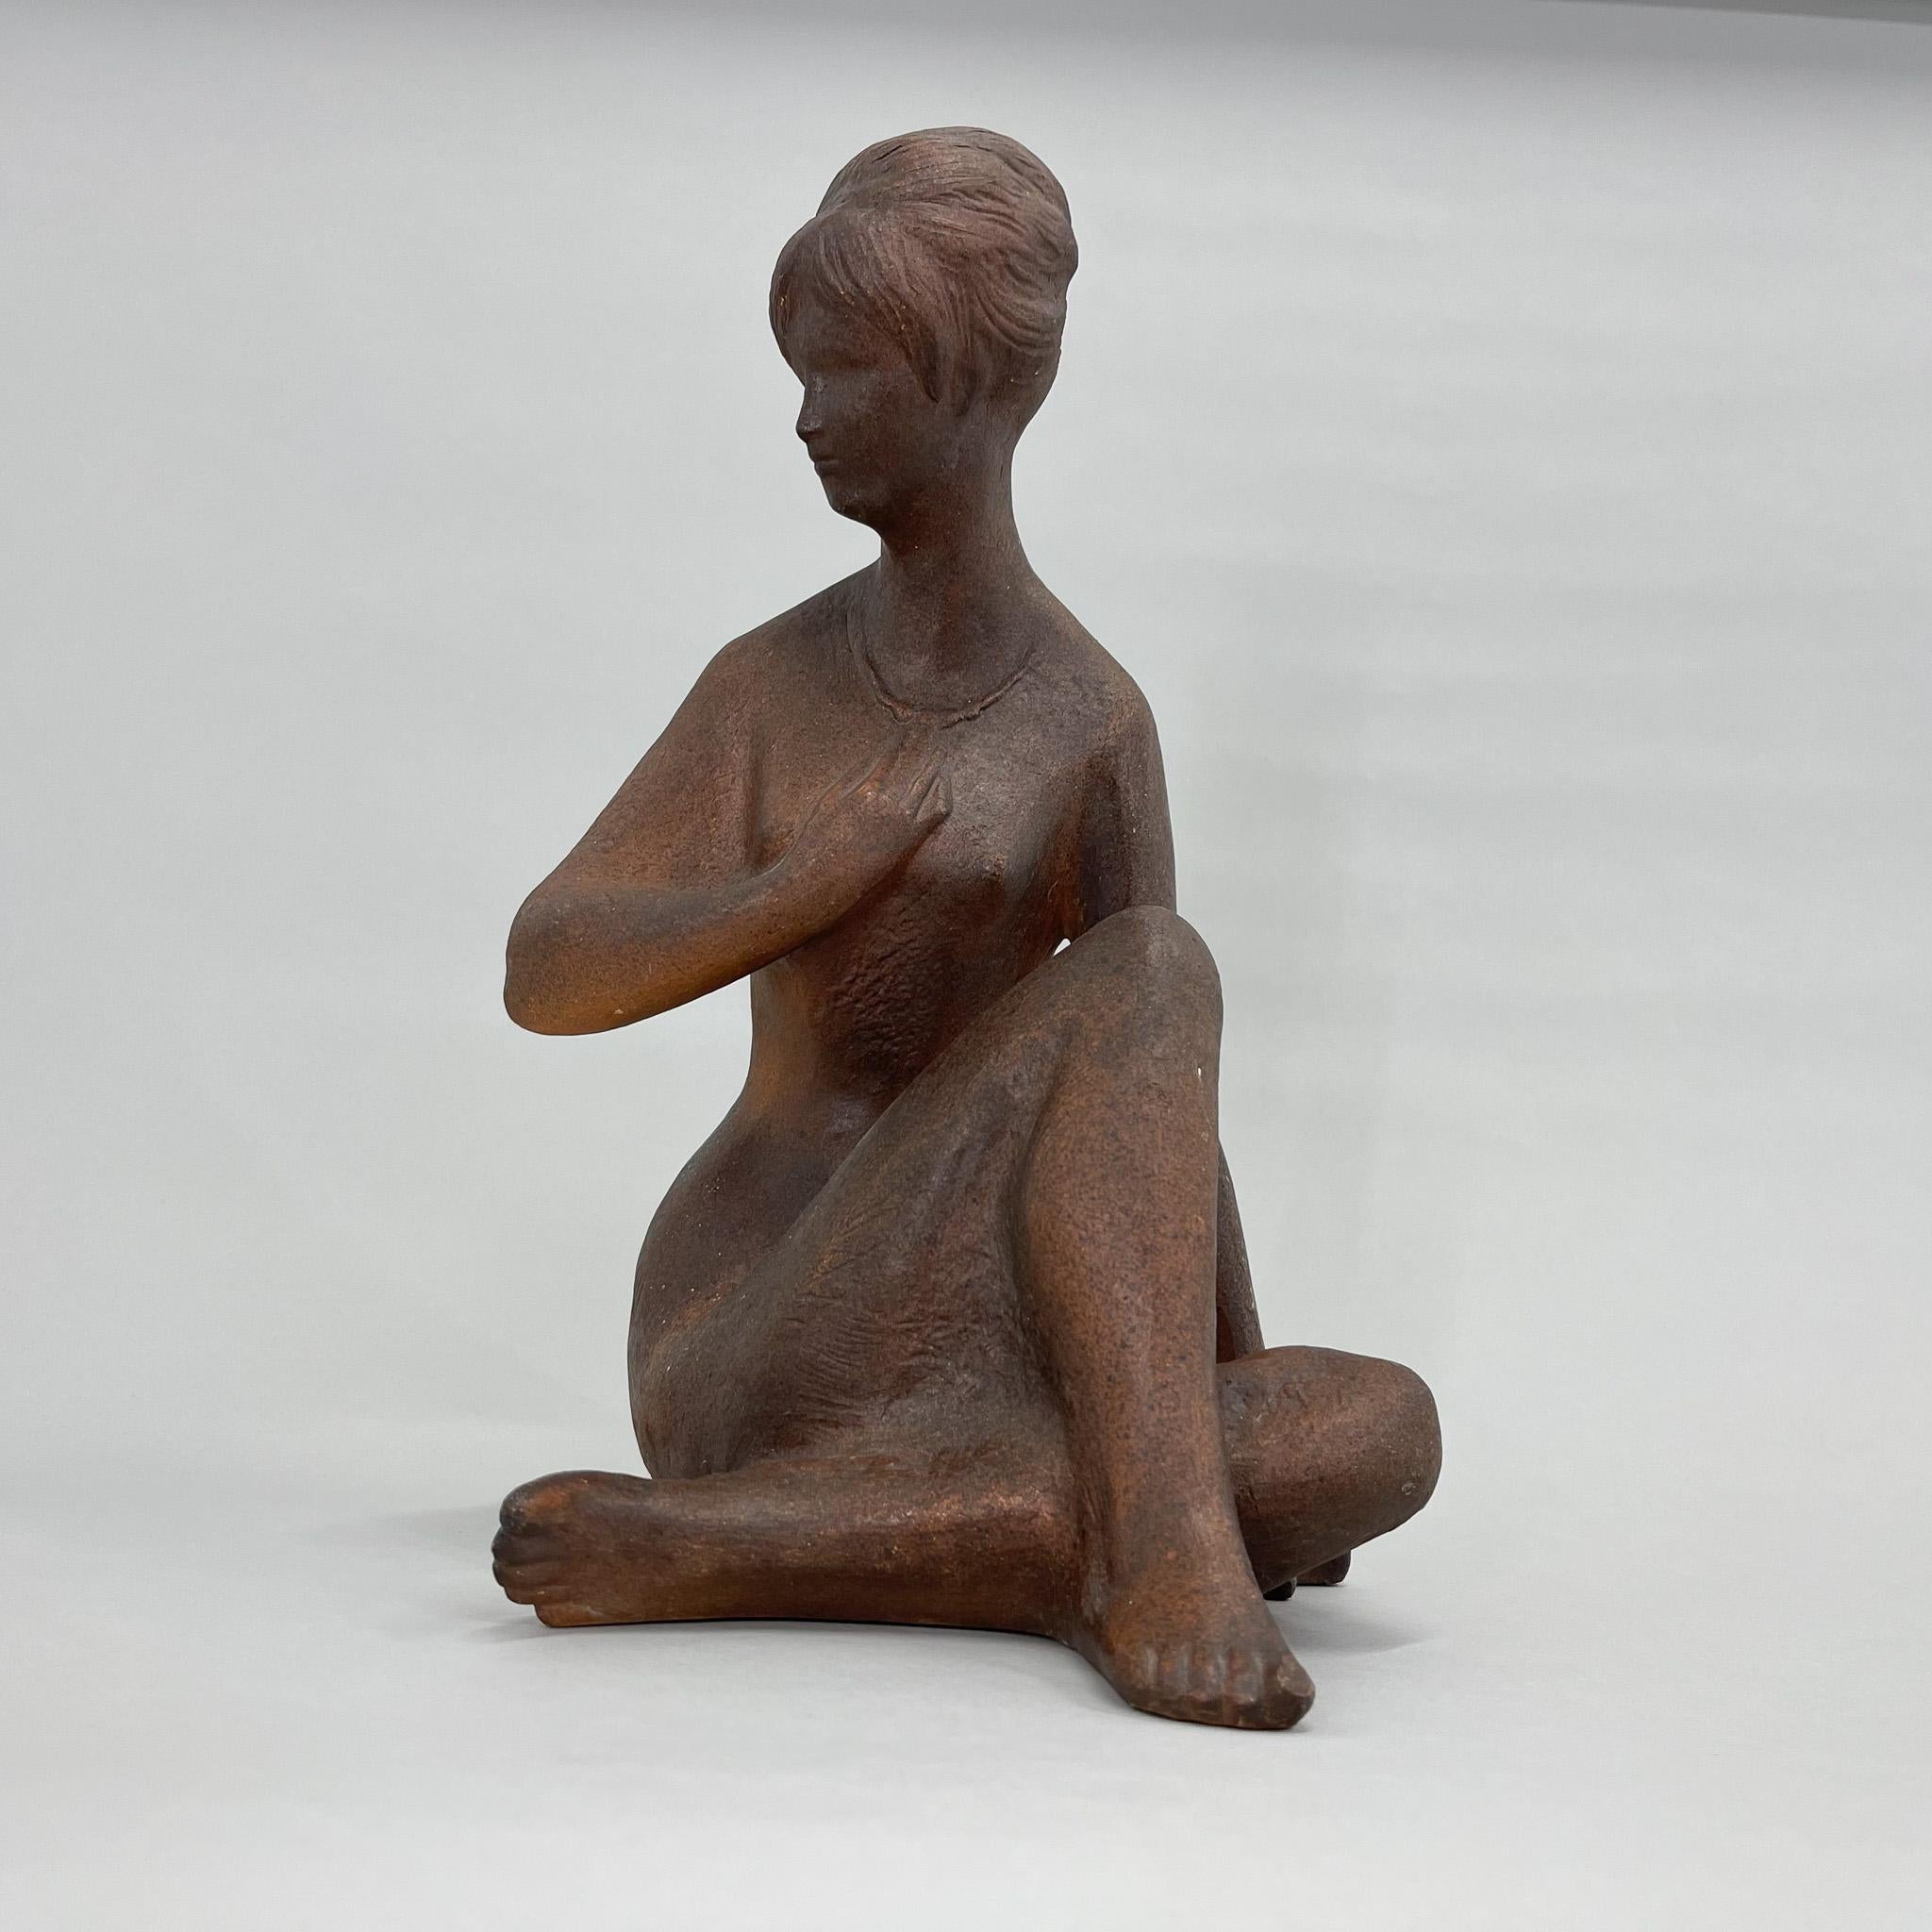 Belle statue en céramique patinée réalisée par Bohumil Kokrda en 1967 en Tchécoslovaquie. La statue d'une jeune fille assise est signée par l'auteur. La sculpture est en bon état vintage.